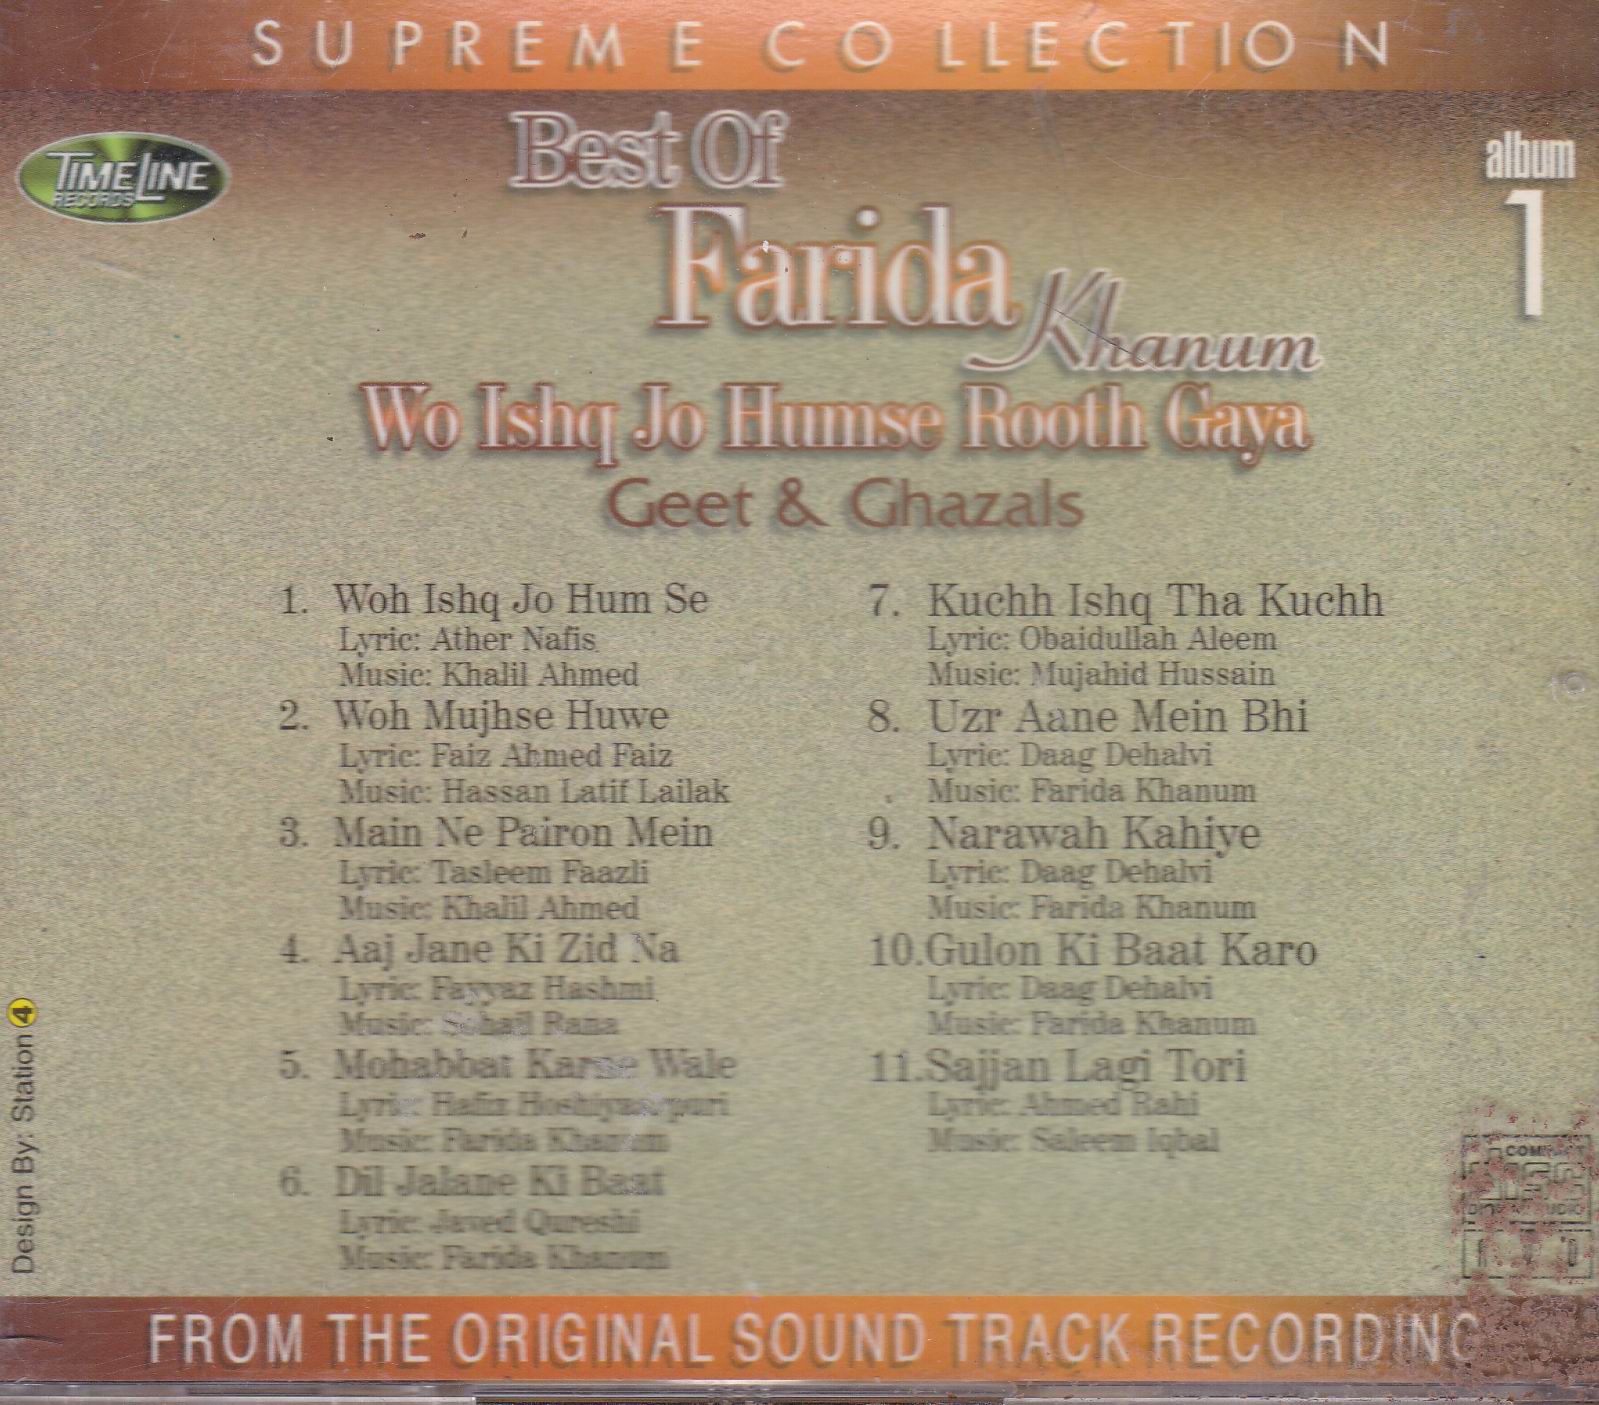 Best Of Farida Khanum TL Cd Superb Recording Vol 1 - Click Image to Close